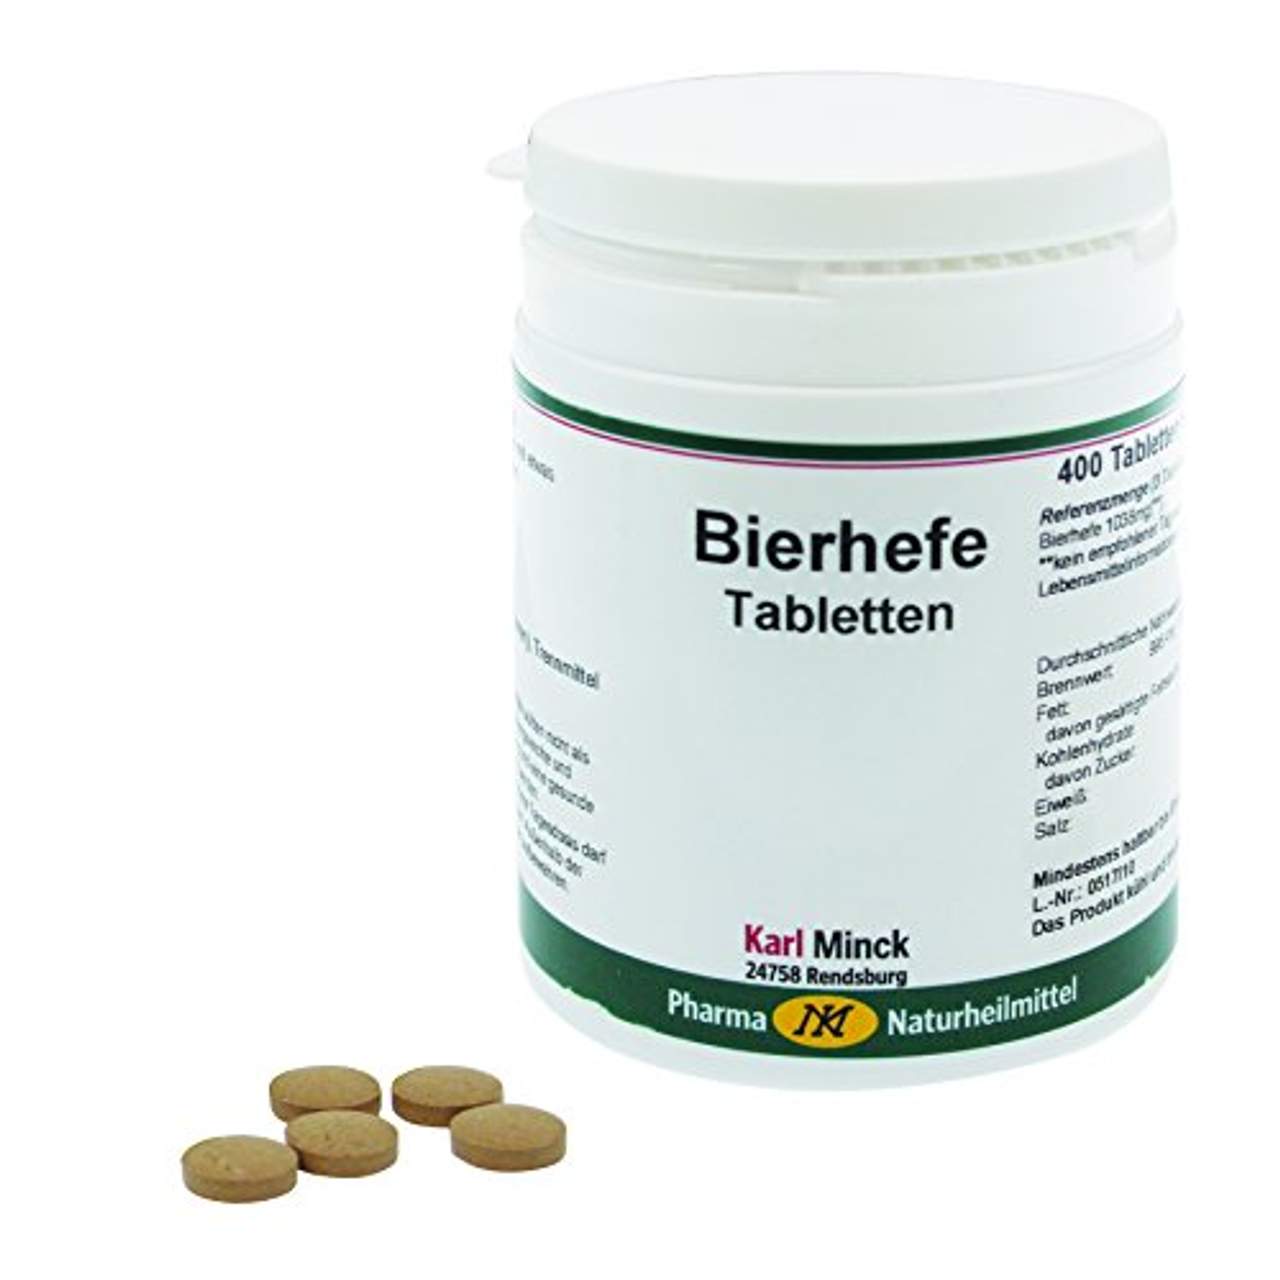 Karl Minck Bierhefe Tabletten